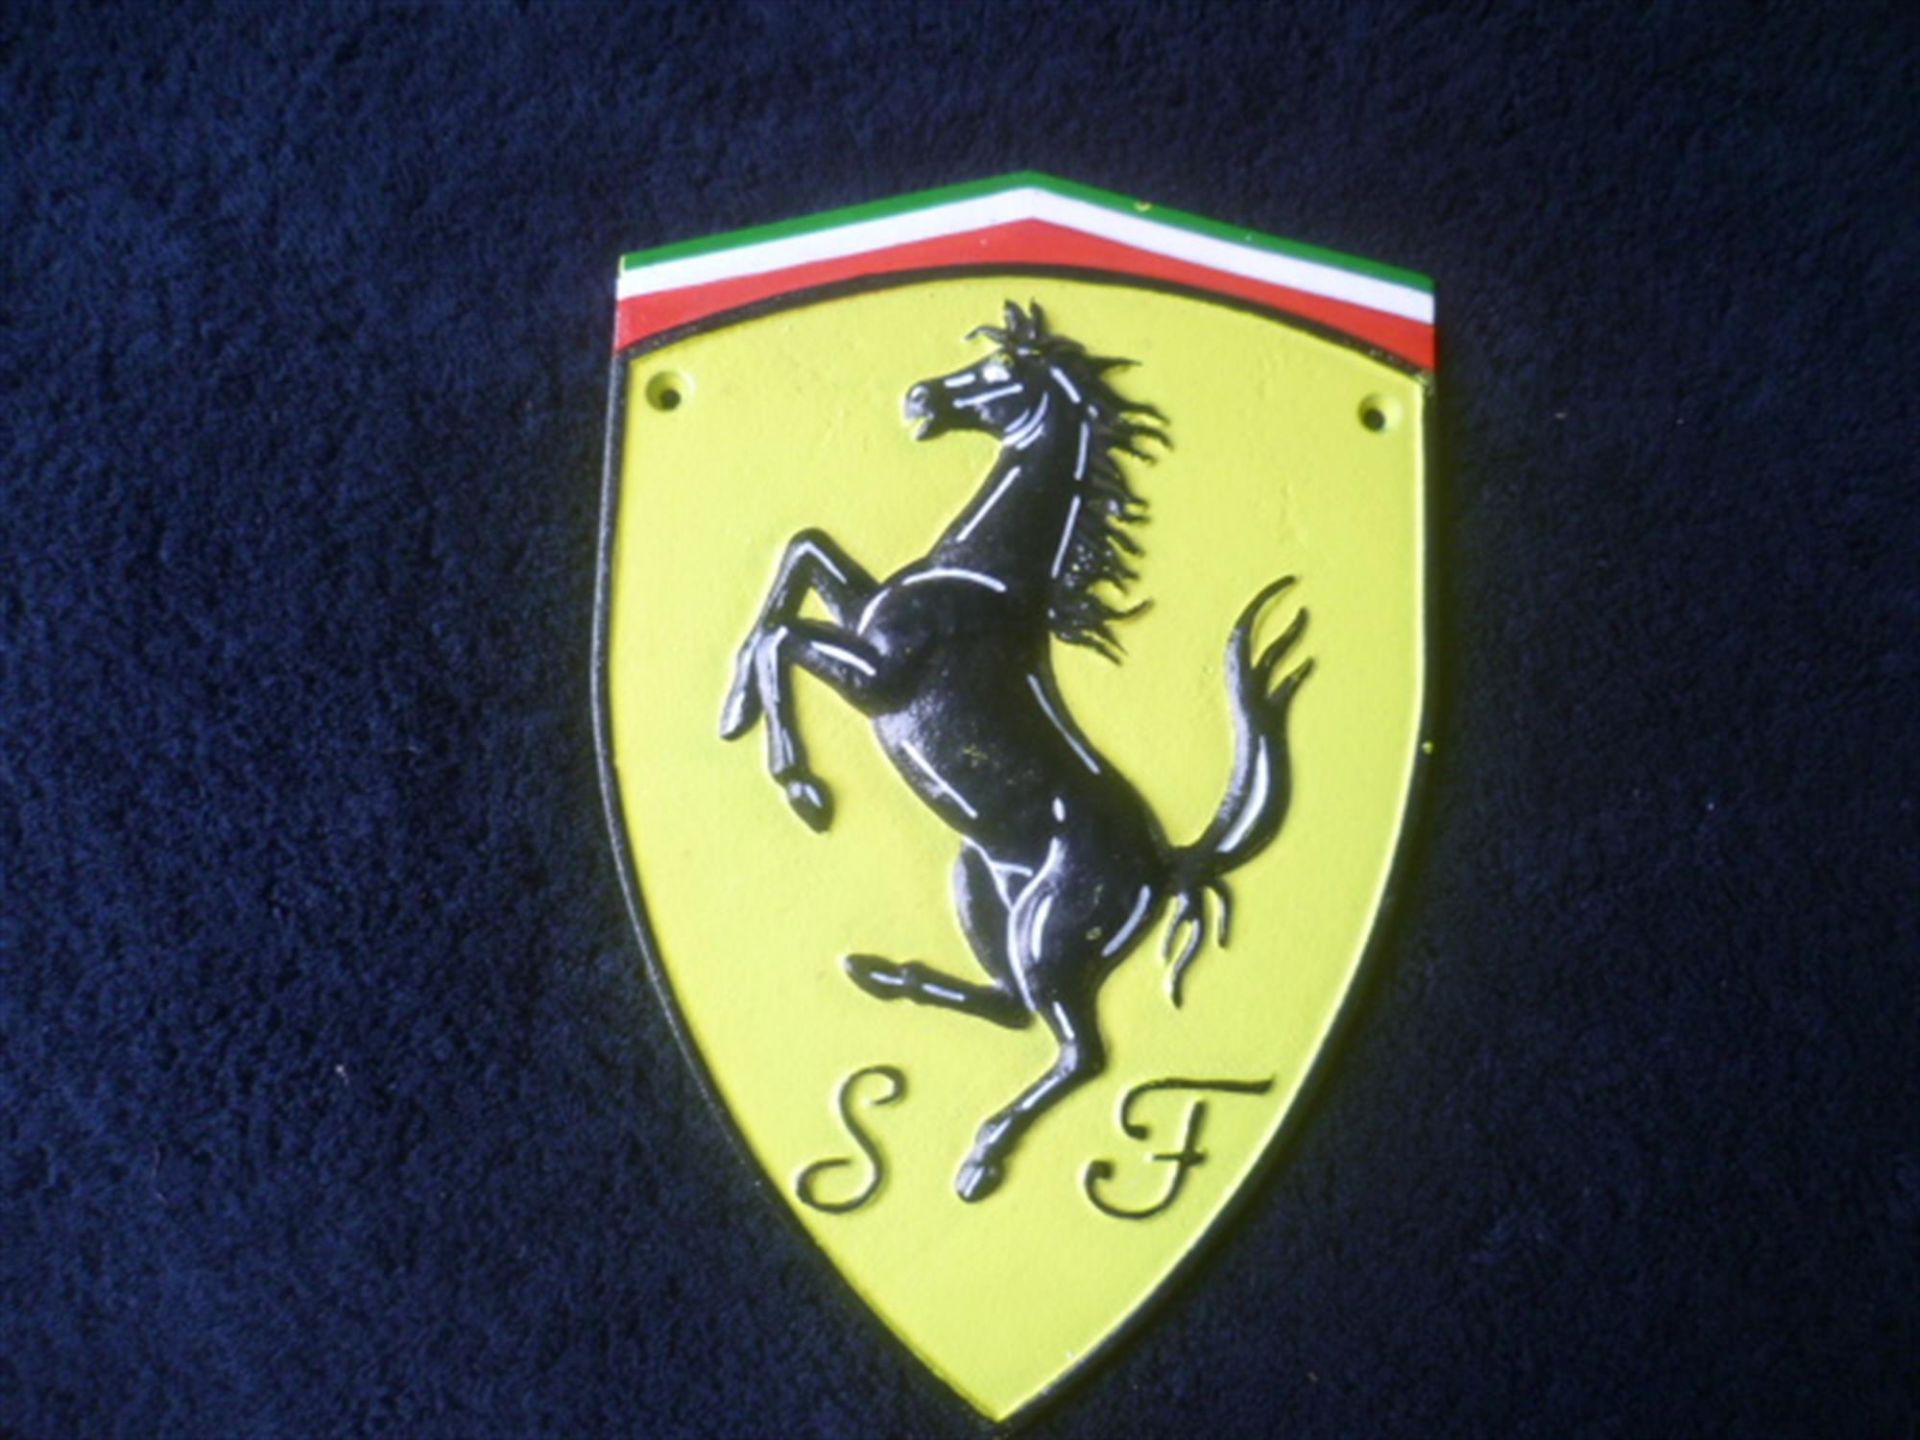 Ferrari Cavallino Rampante Cast Plaque - Image 2 of 2